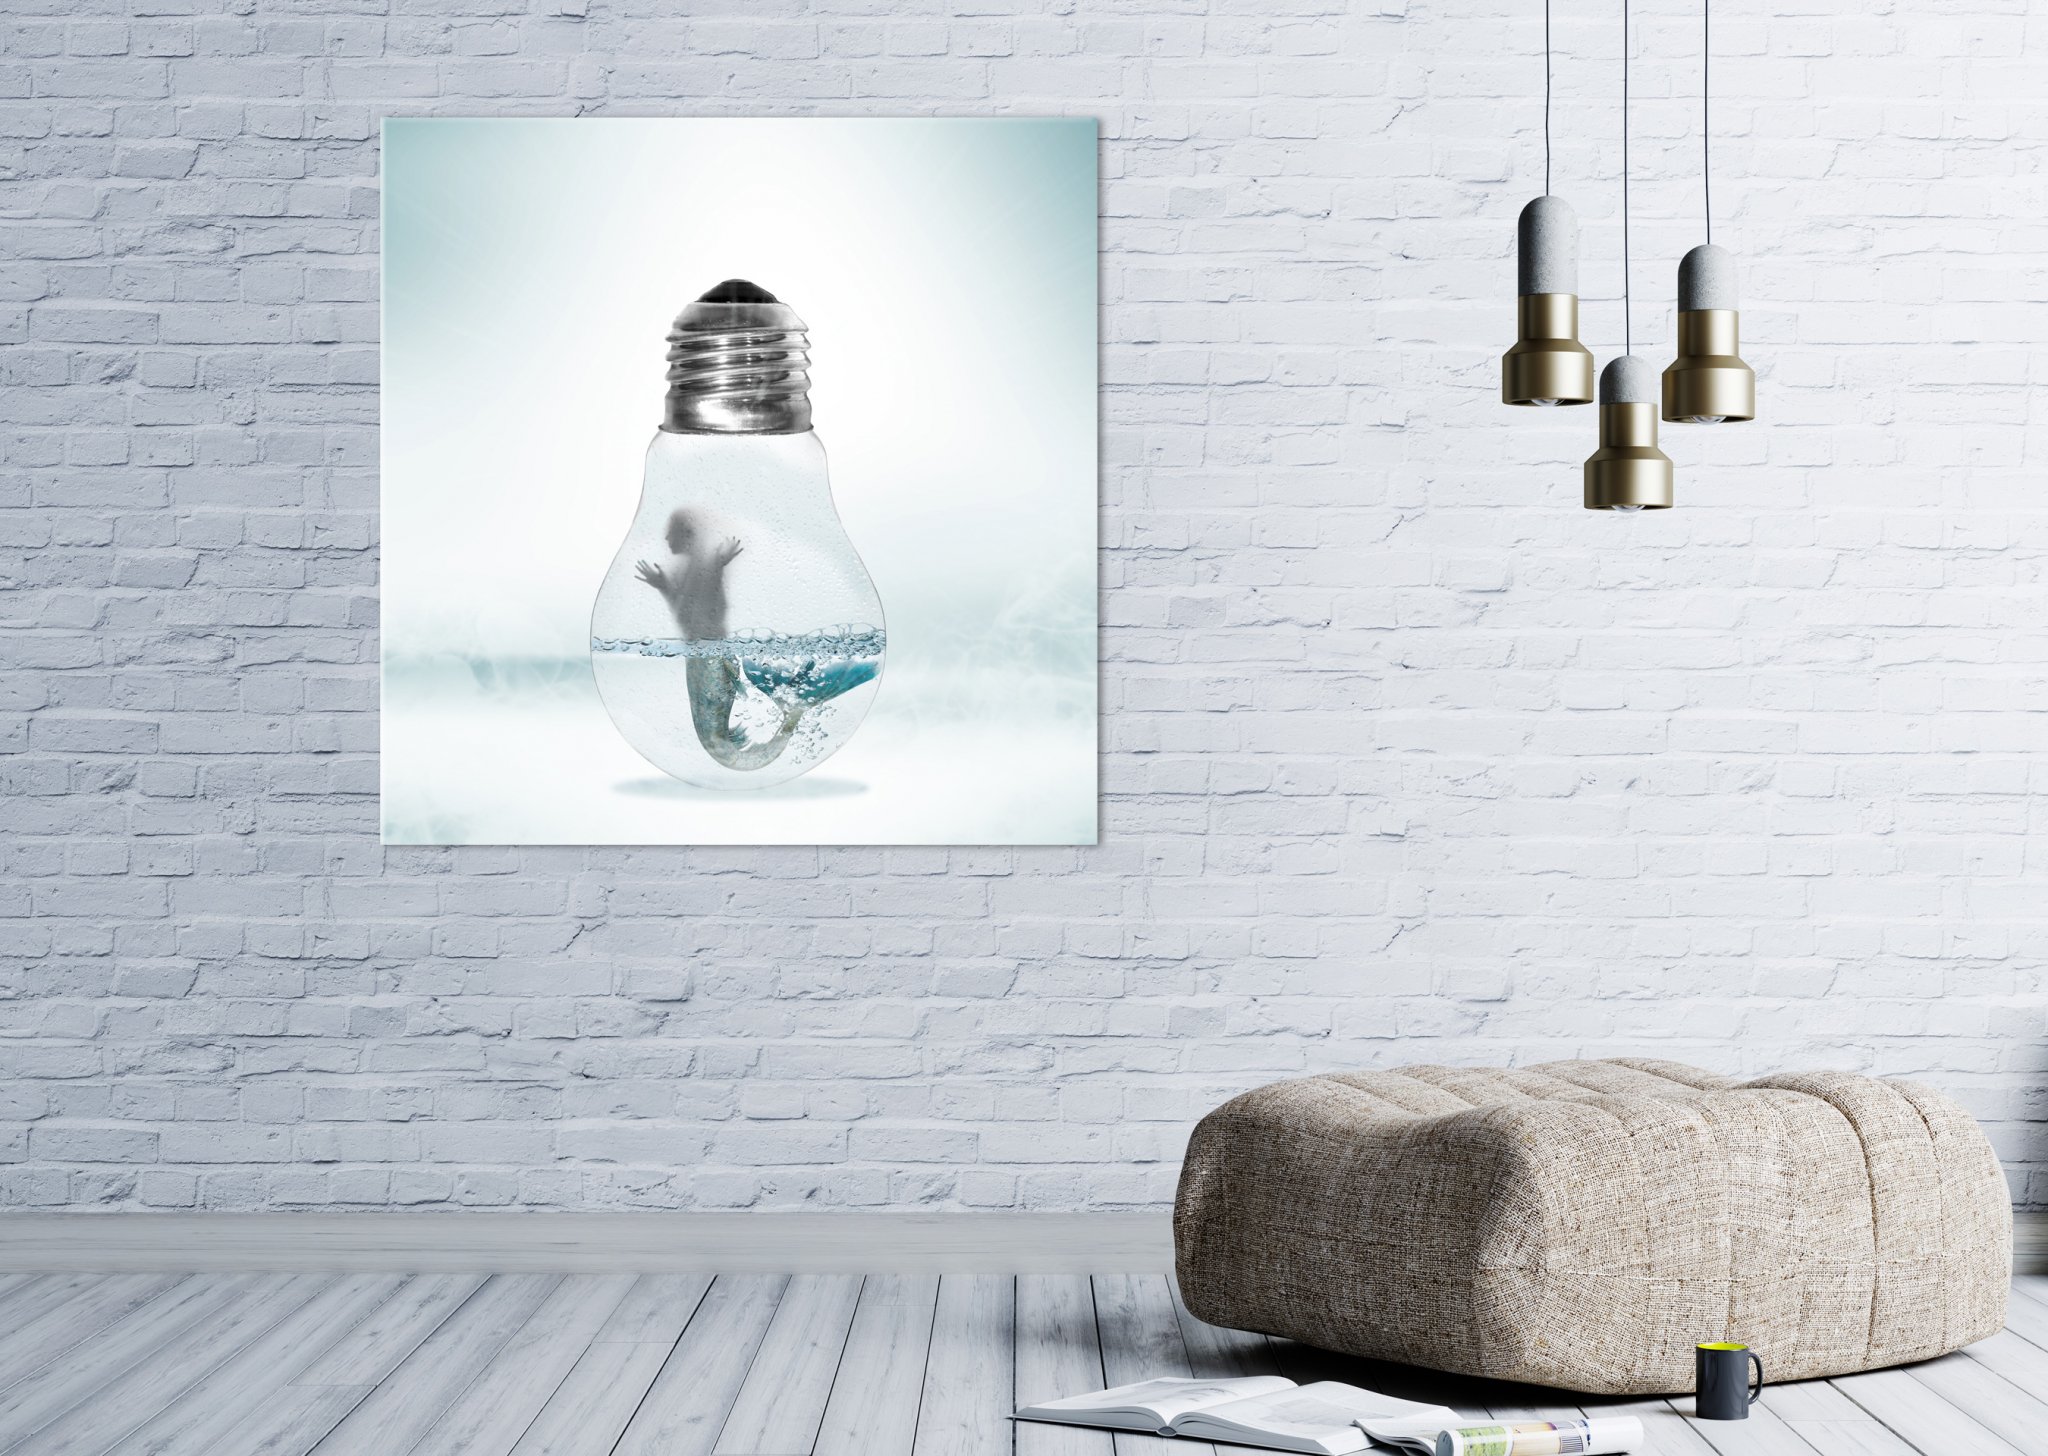 Kreative Bildbearbeitung Composing Artwork zeigt eine Meerjungfrau in einer Glühbirne gefangen im Wohnbeispiel.